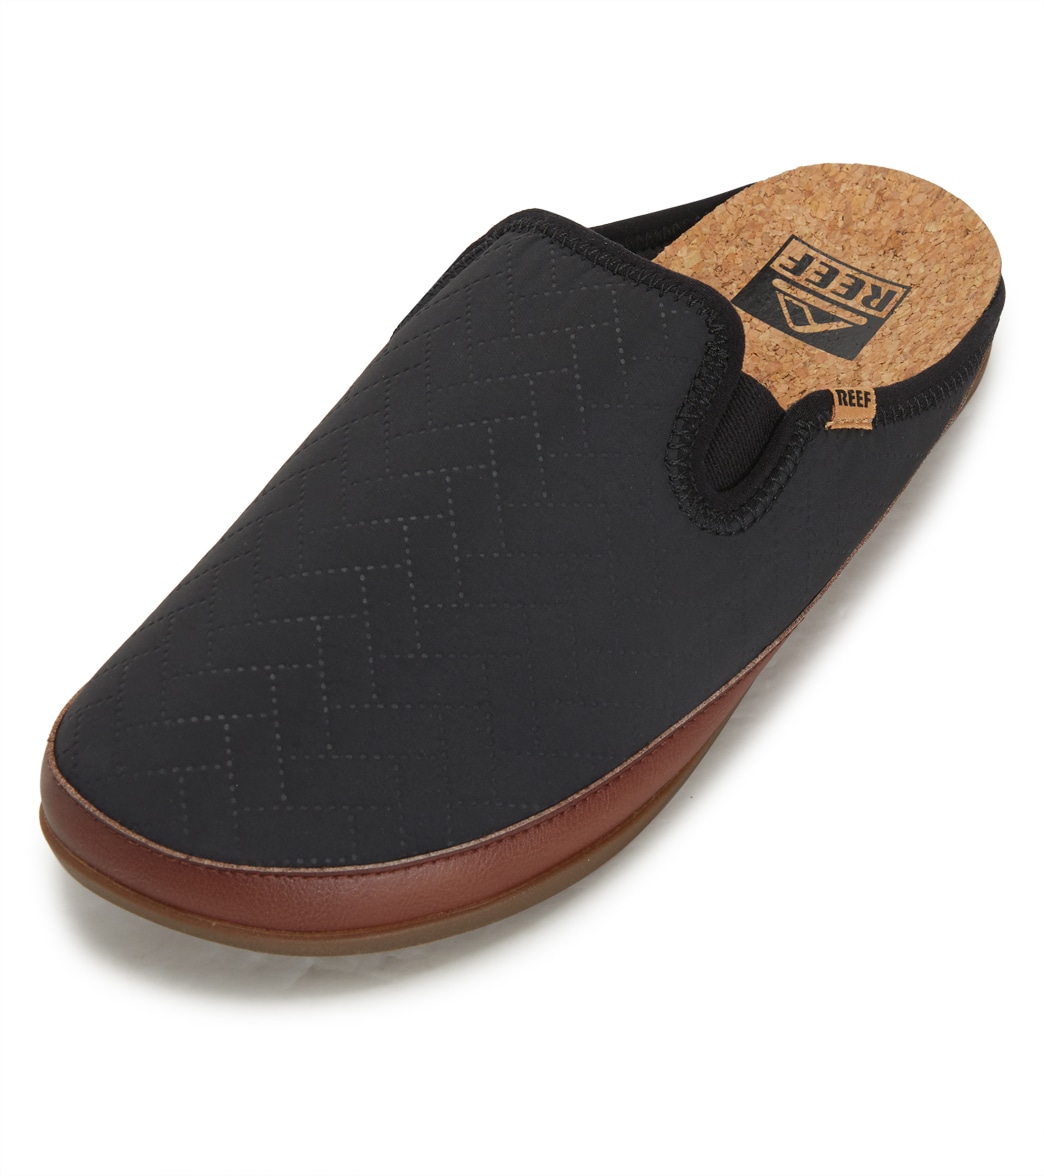 Reef Men's Cushion Homey Slip On Shoes Shoes Shoe - Black 9 - Swimoutlet.com